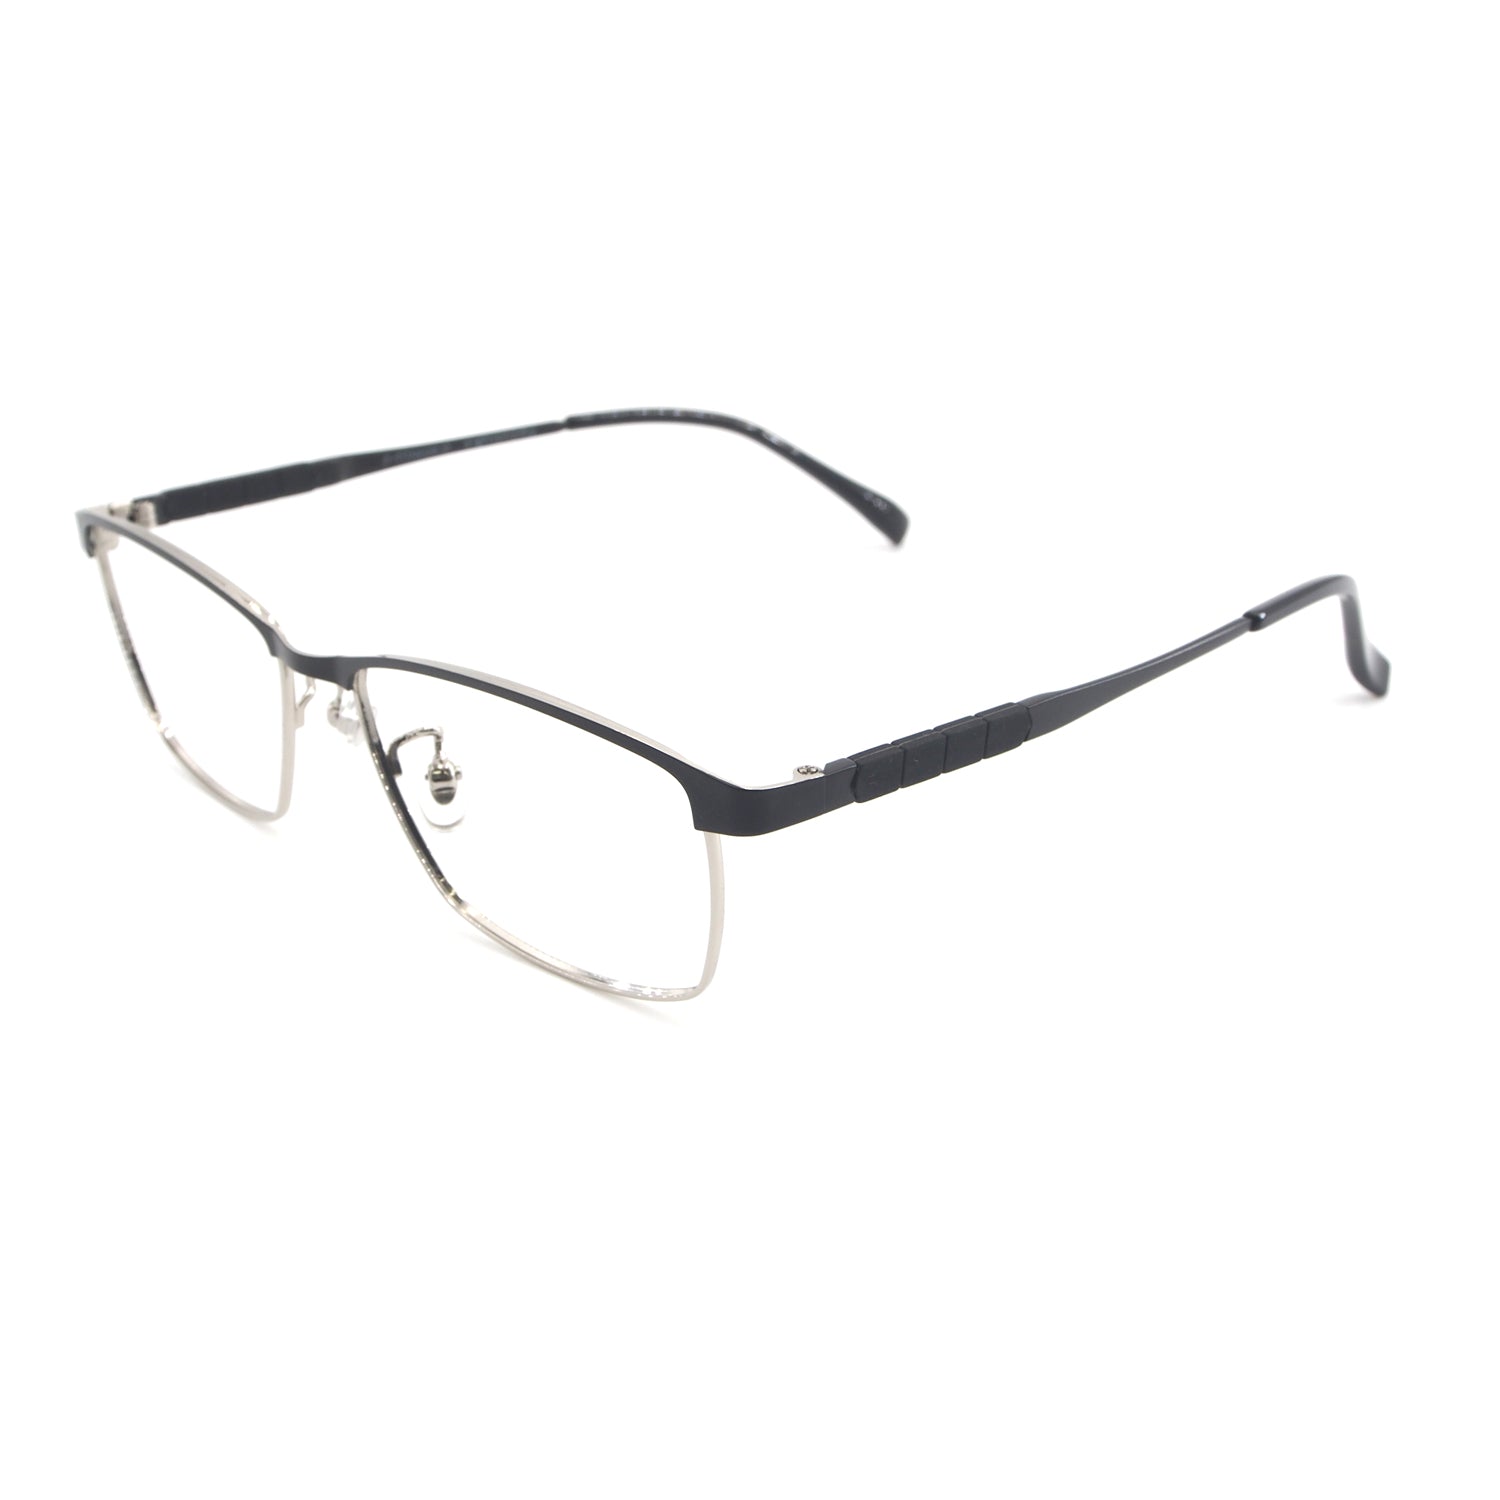 Easton in Glaze Eyeglasses - sightonomy